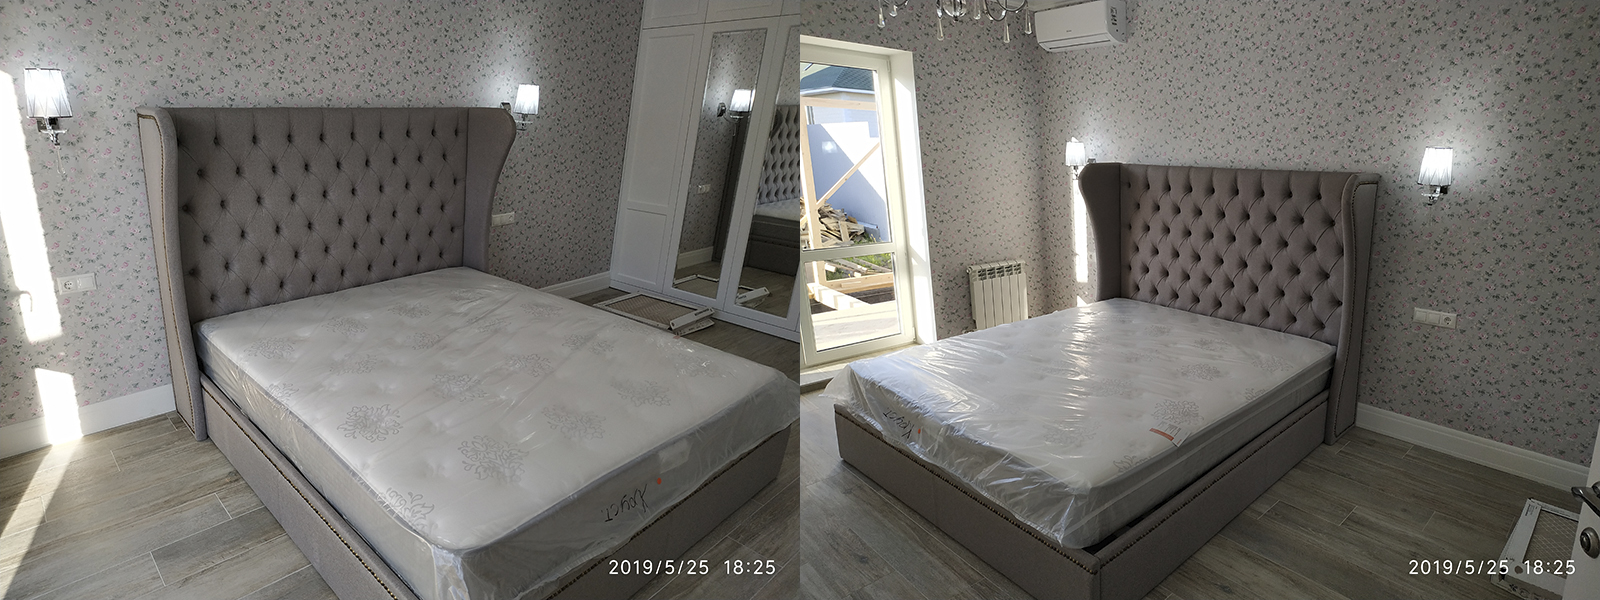 Обшивка кровати в Керчи от опытных специалистов мастерской MebelProfi